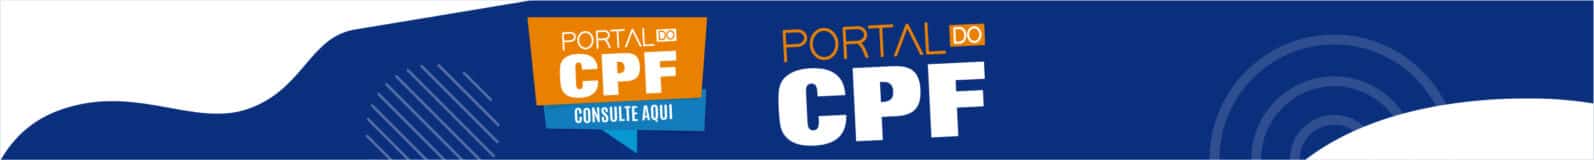 Portal do CPF